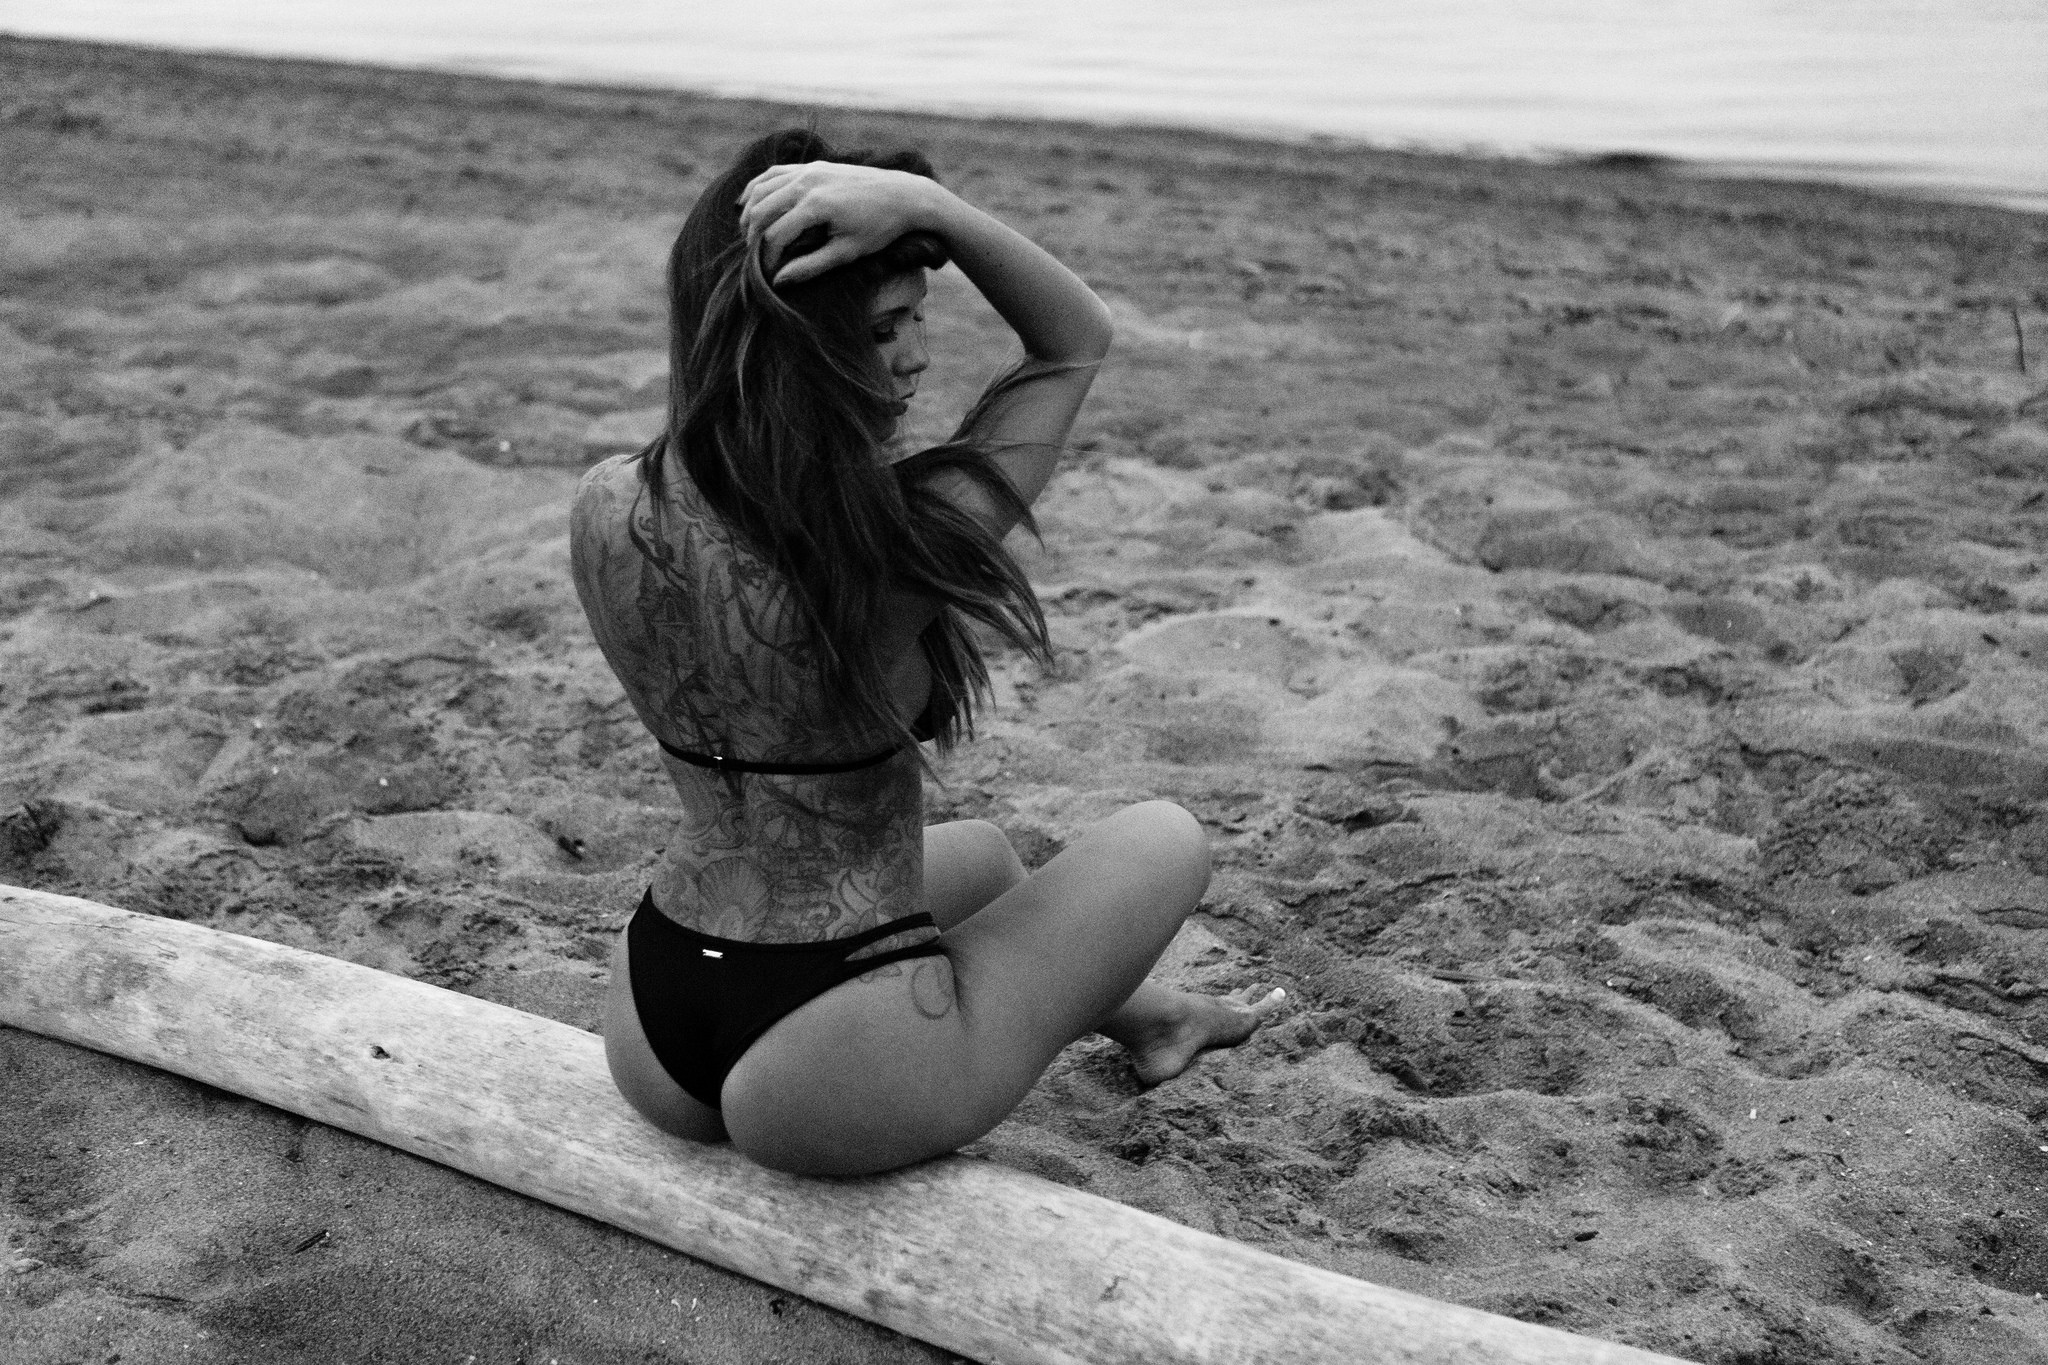 Жопа девушки красивое море теплый песок